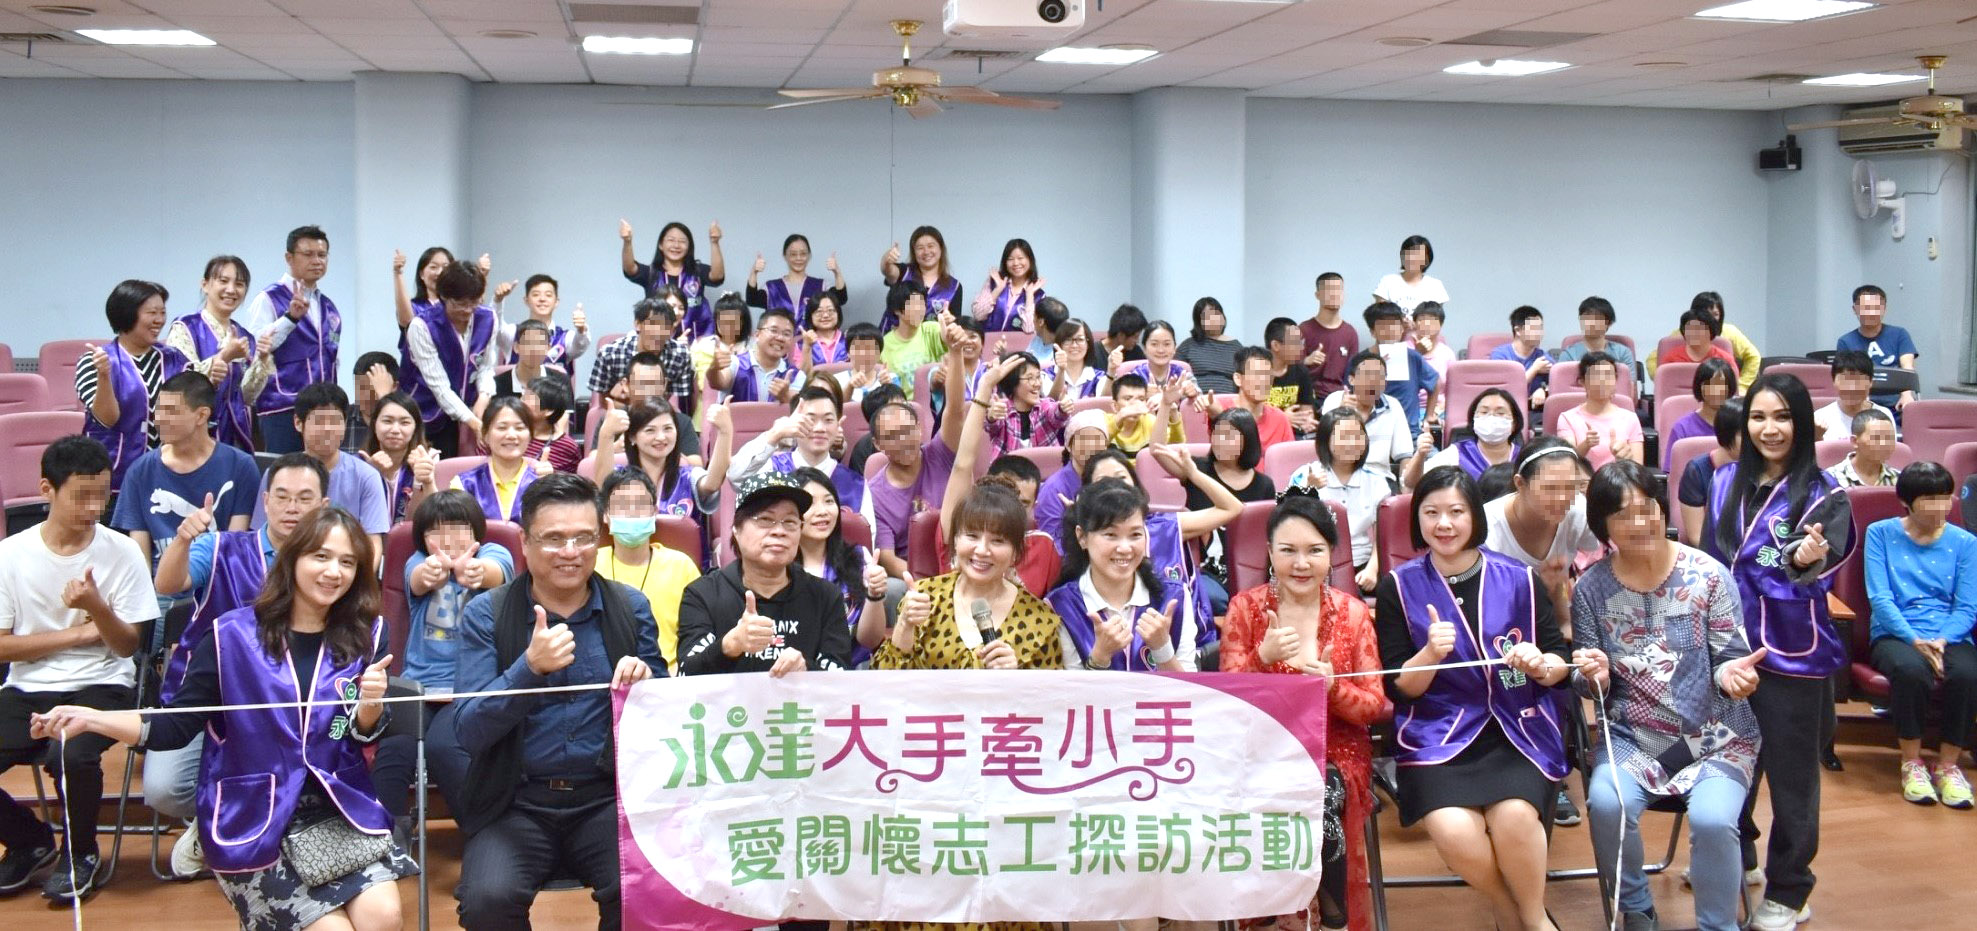 陳惠文業務處經理（坐者右四）、林佩瑜業務籌備處經理（坐者右二）呼朋引伴號召36位夥伴參與志工行列。